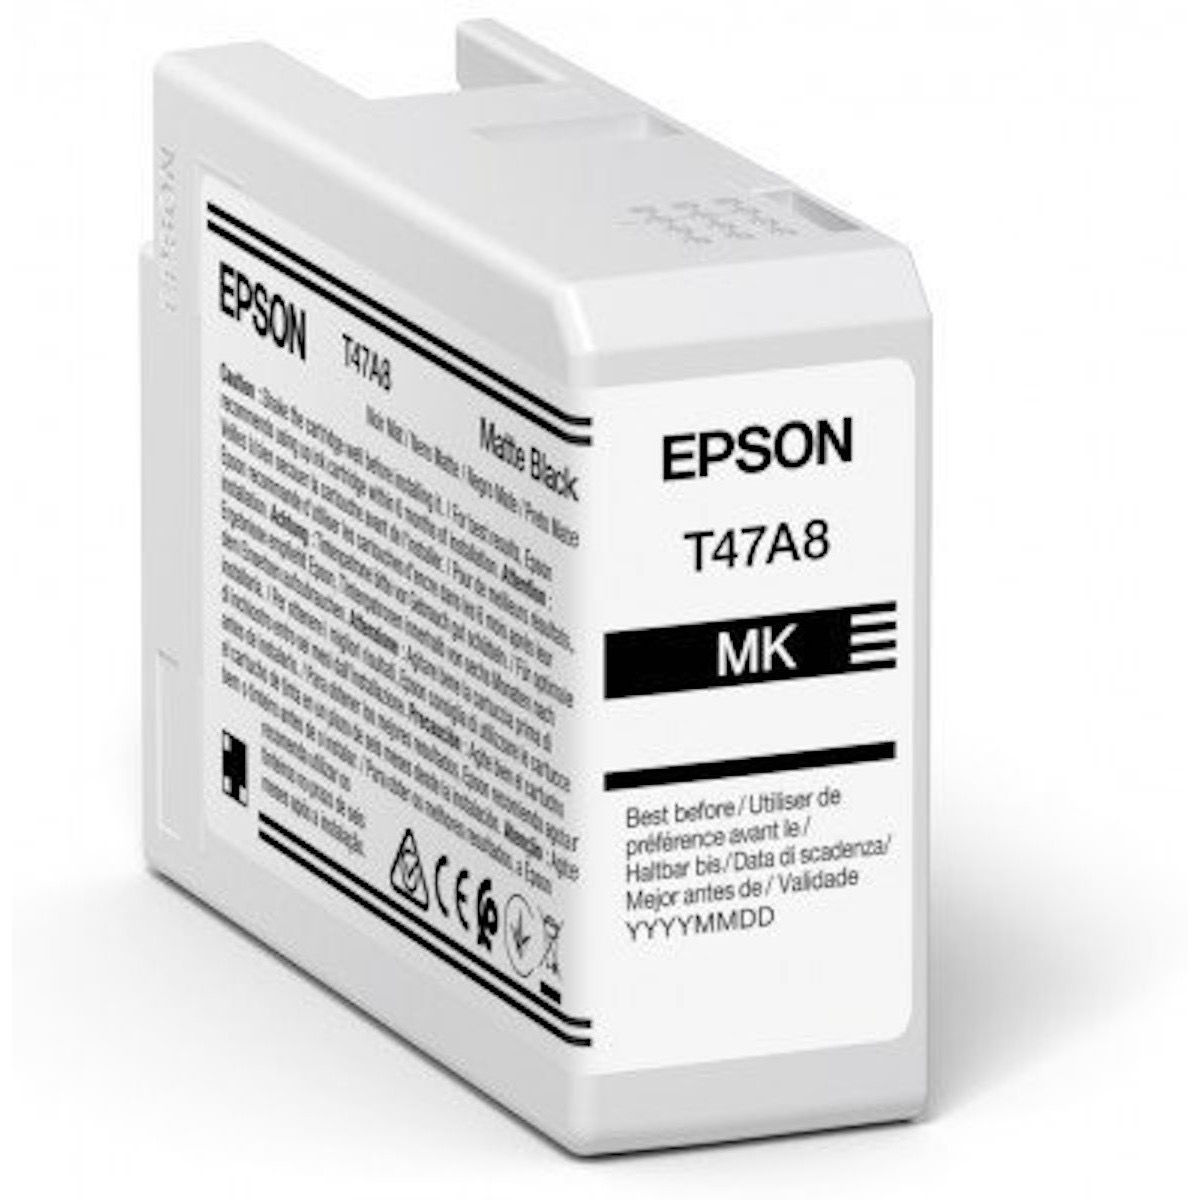 Epson T47A8 matte black Tinte